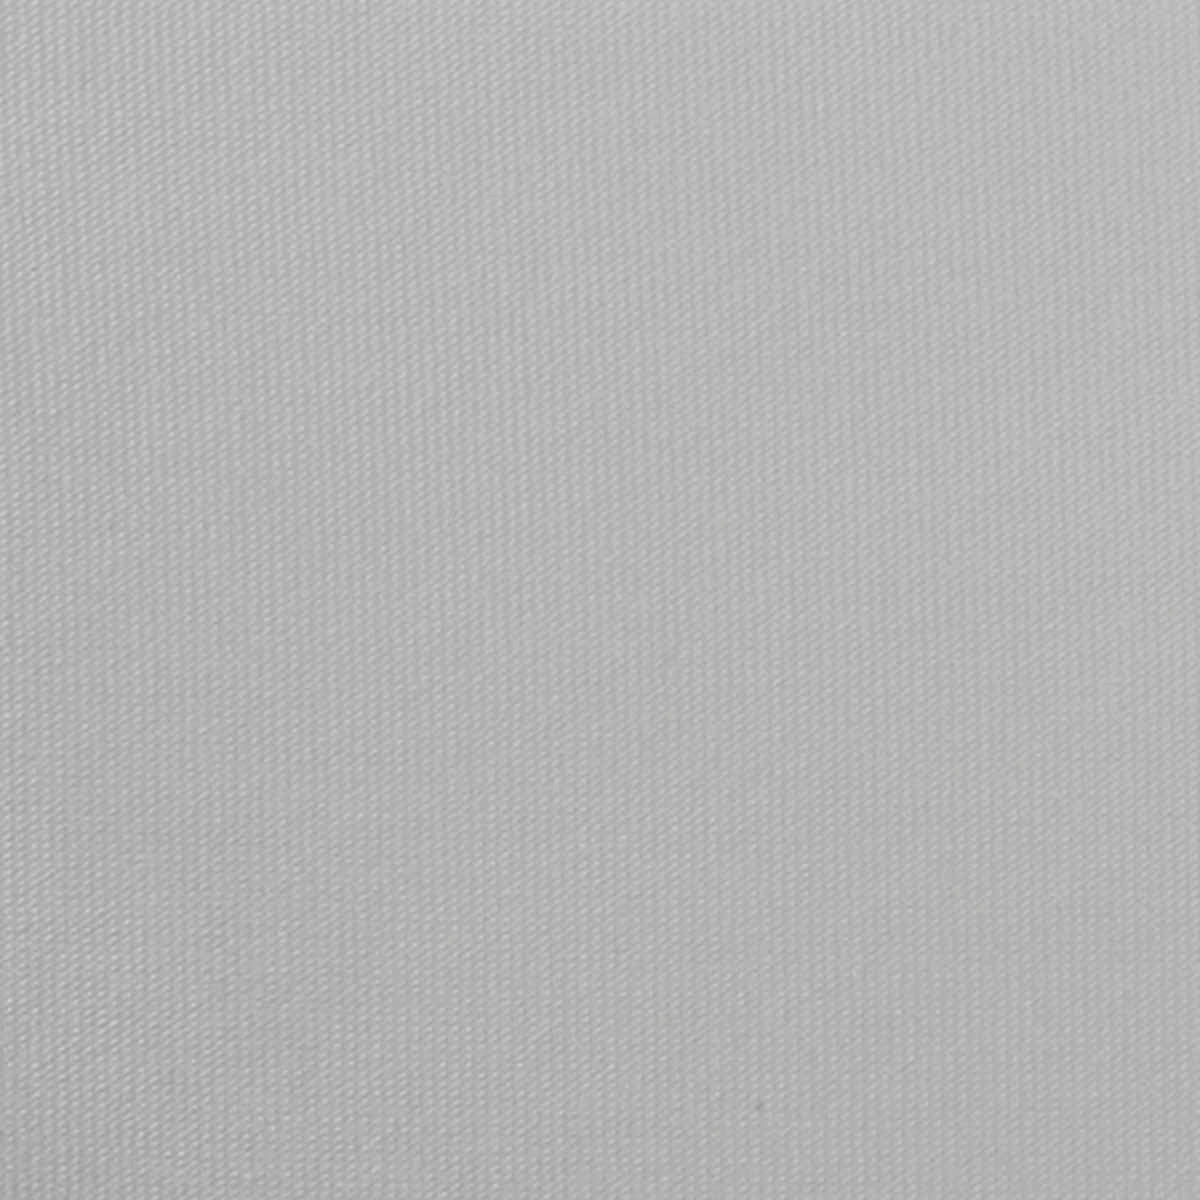 Lit mezzanine avec sommier et escalier en tissu gris clair, métal blanc et mélamine chêne - couchage 140x190 cm - DOCKLAND